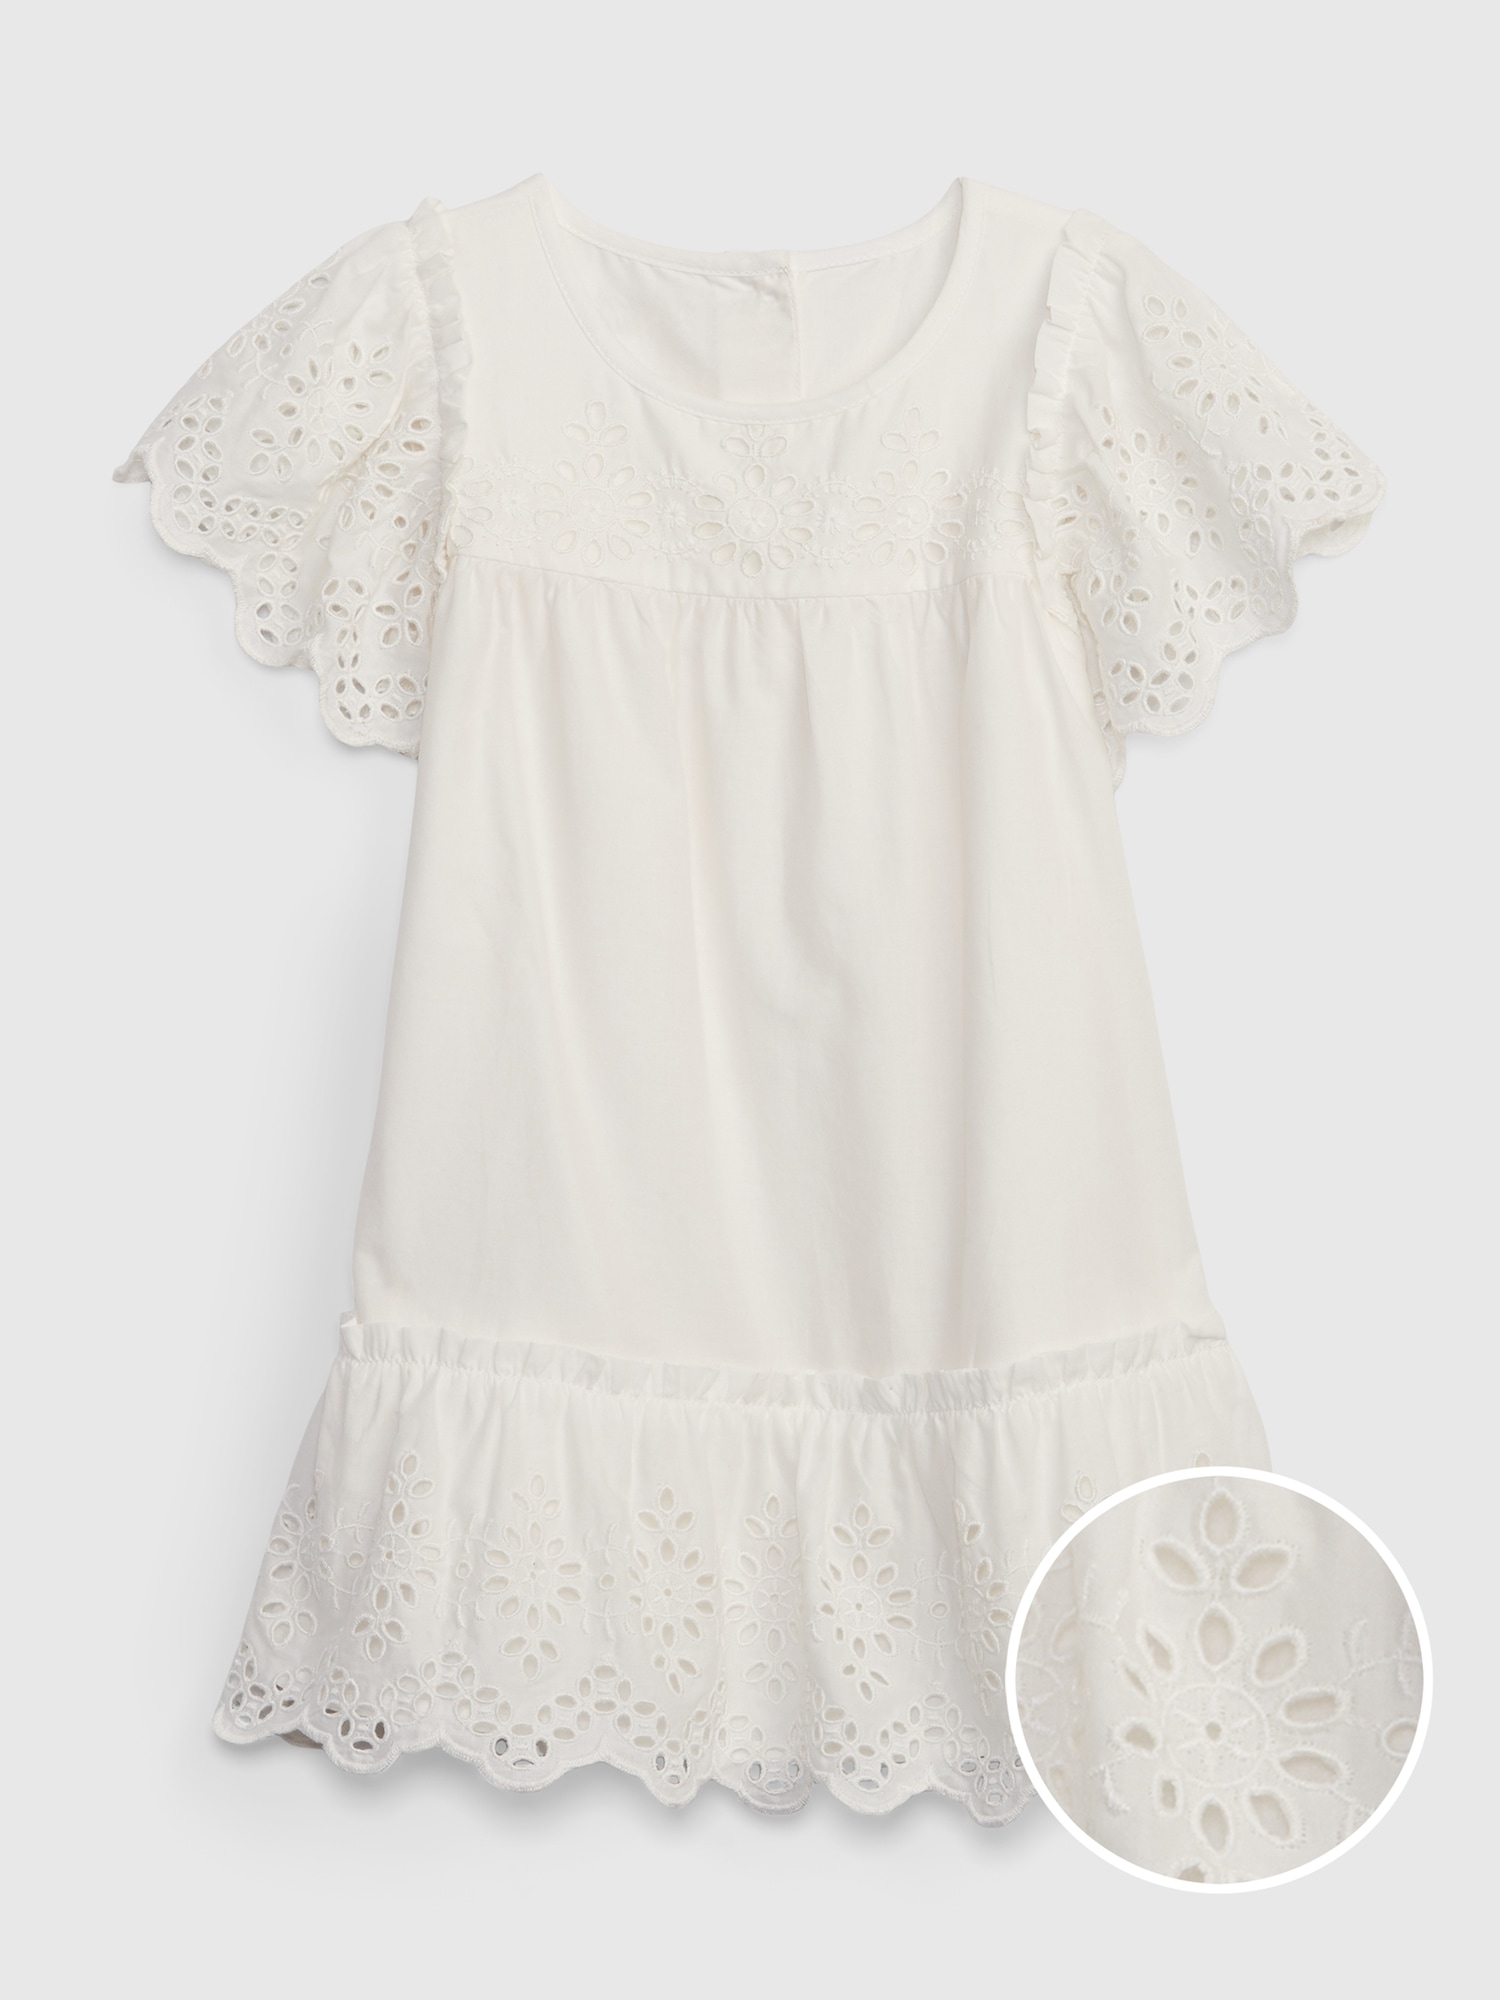 Gap Toddler Tiered Eyelet Dress white. 1